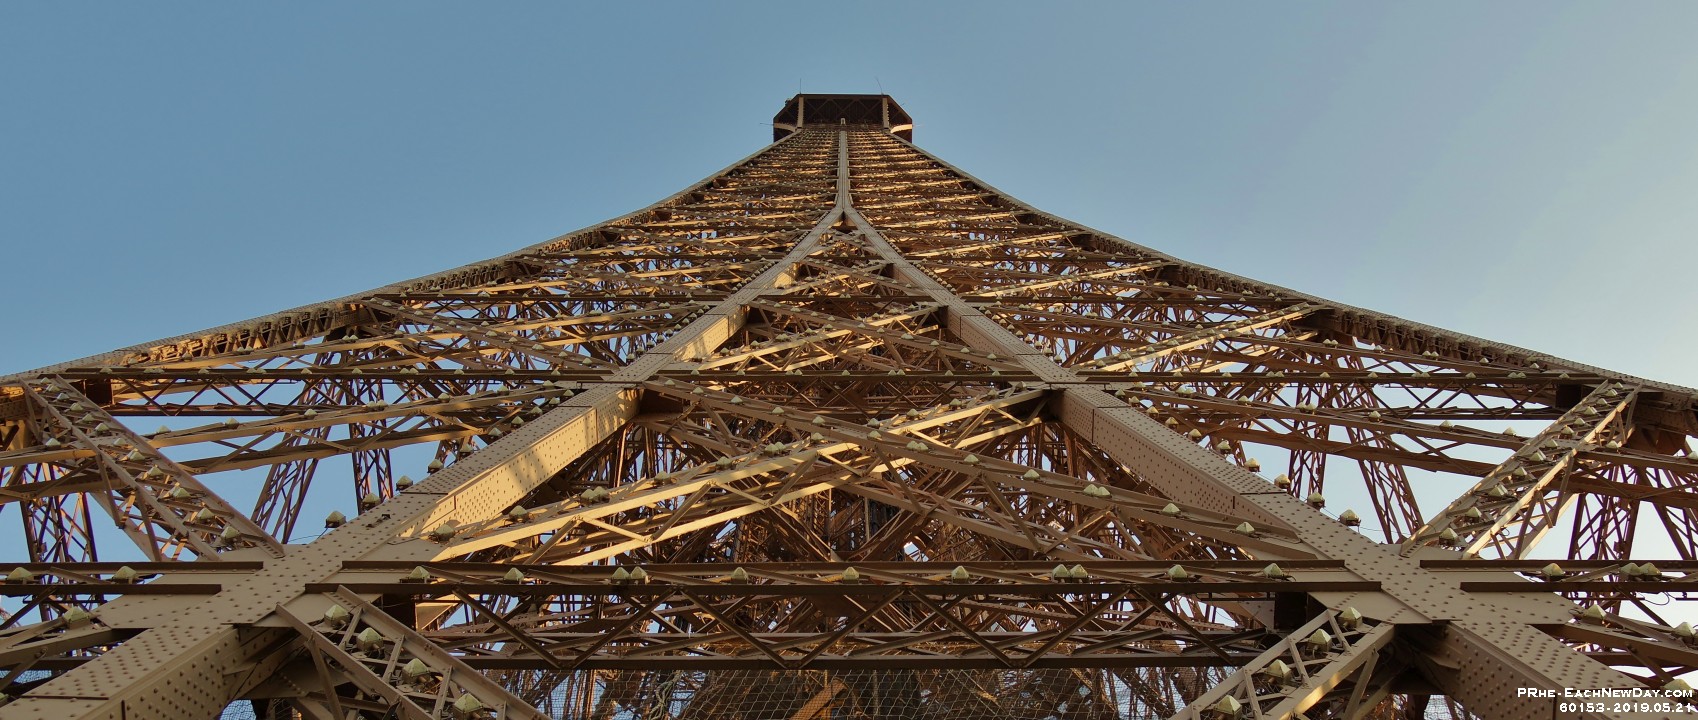 60153RoCrLe - We ascend the Eiffel Tower - Paris, France